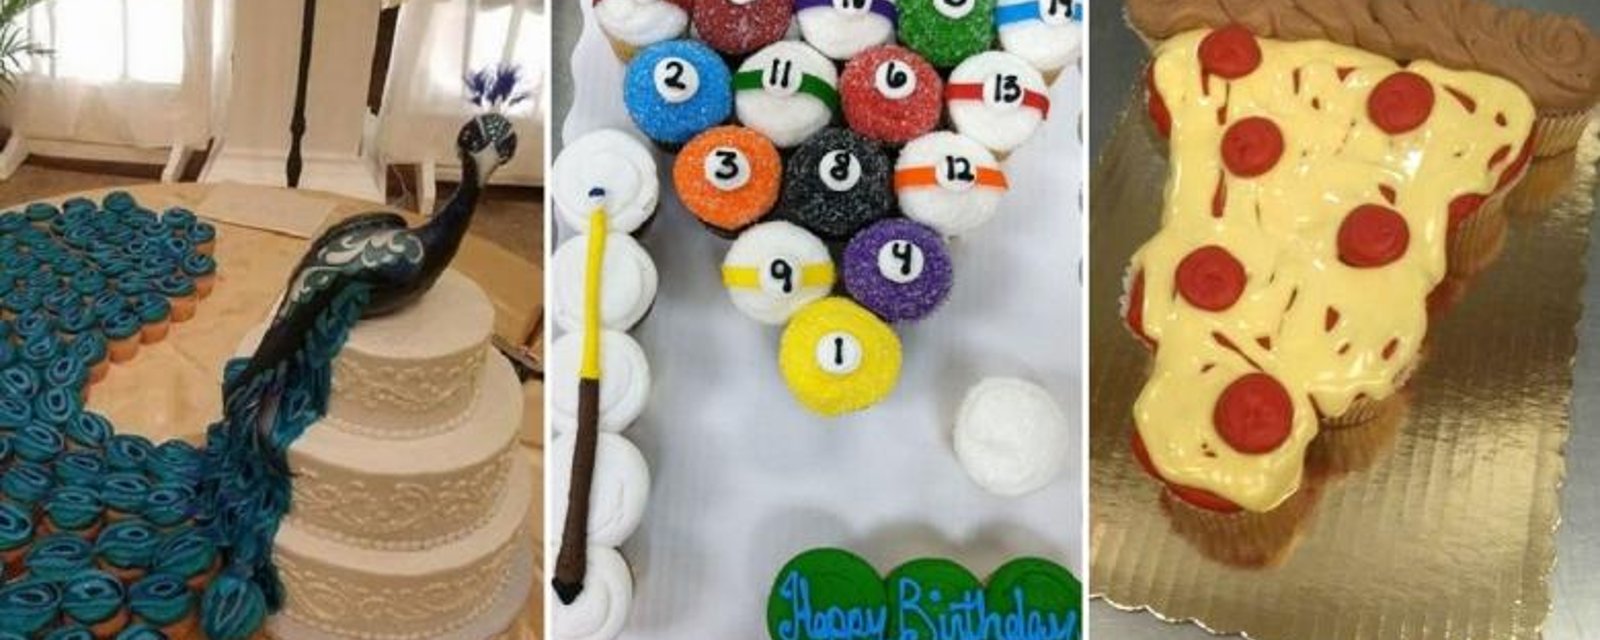 Les 12 Gâteaux Cupcakes les plus impressionnants du Net! Et ils sont faciles à reproduire! 